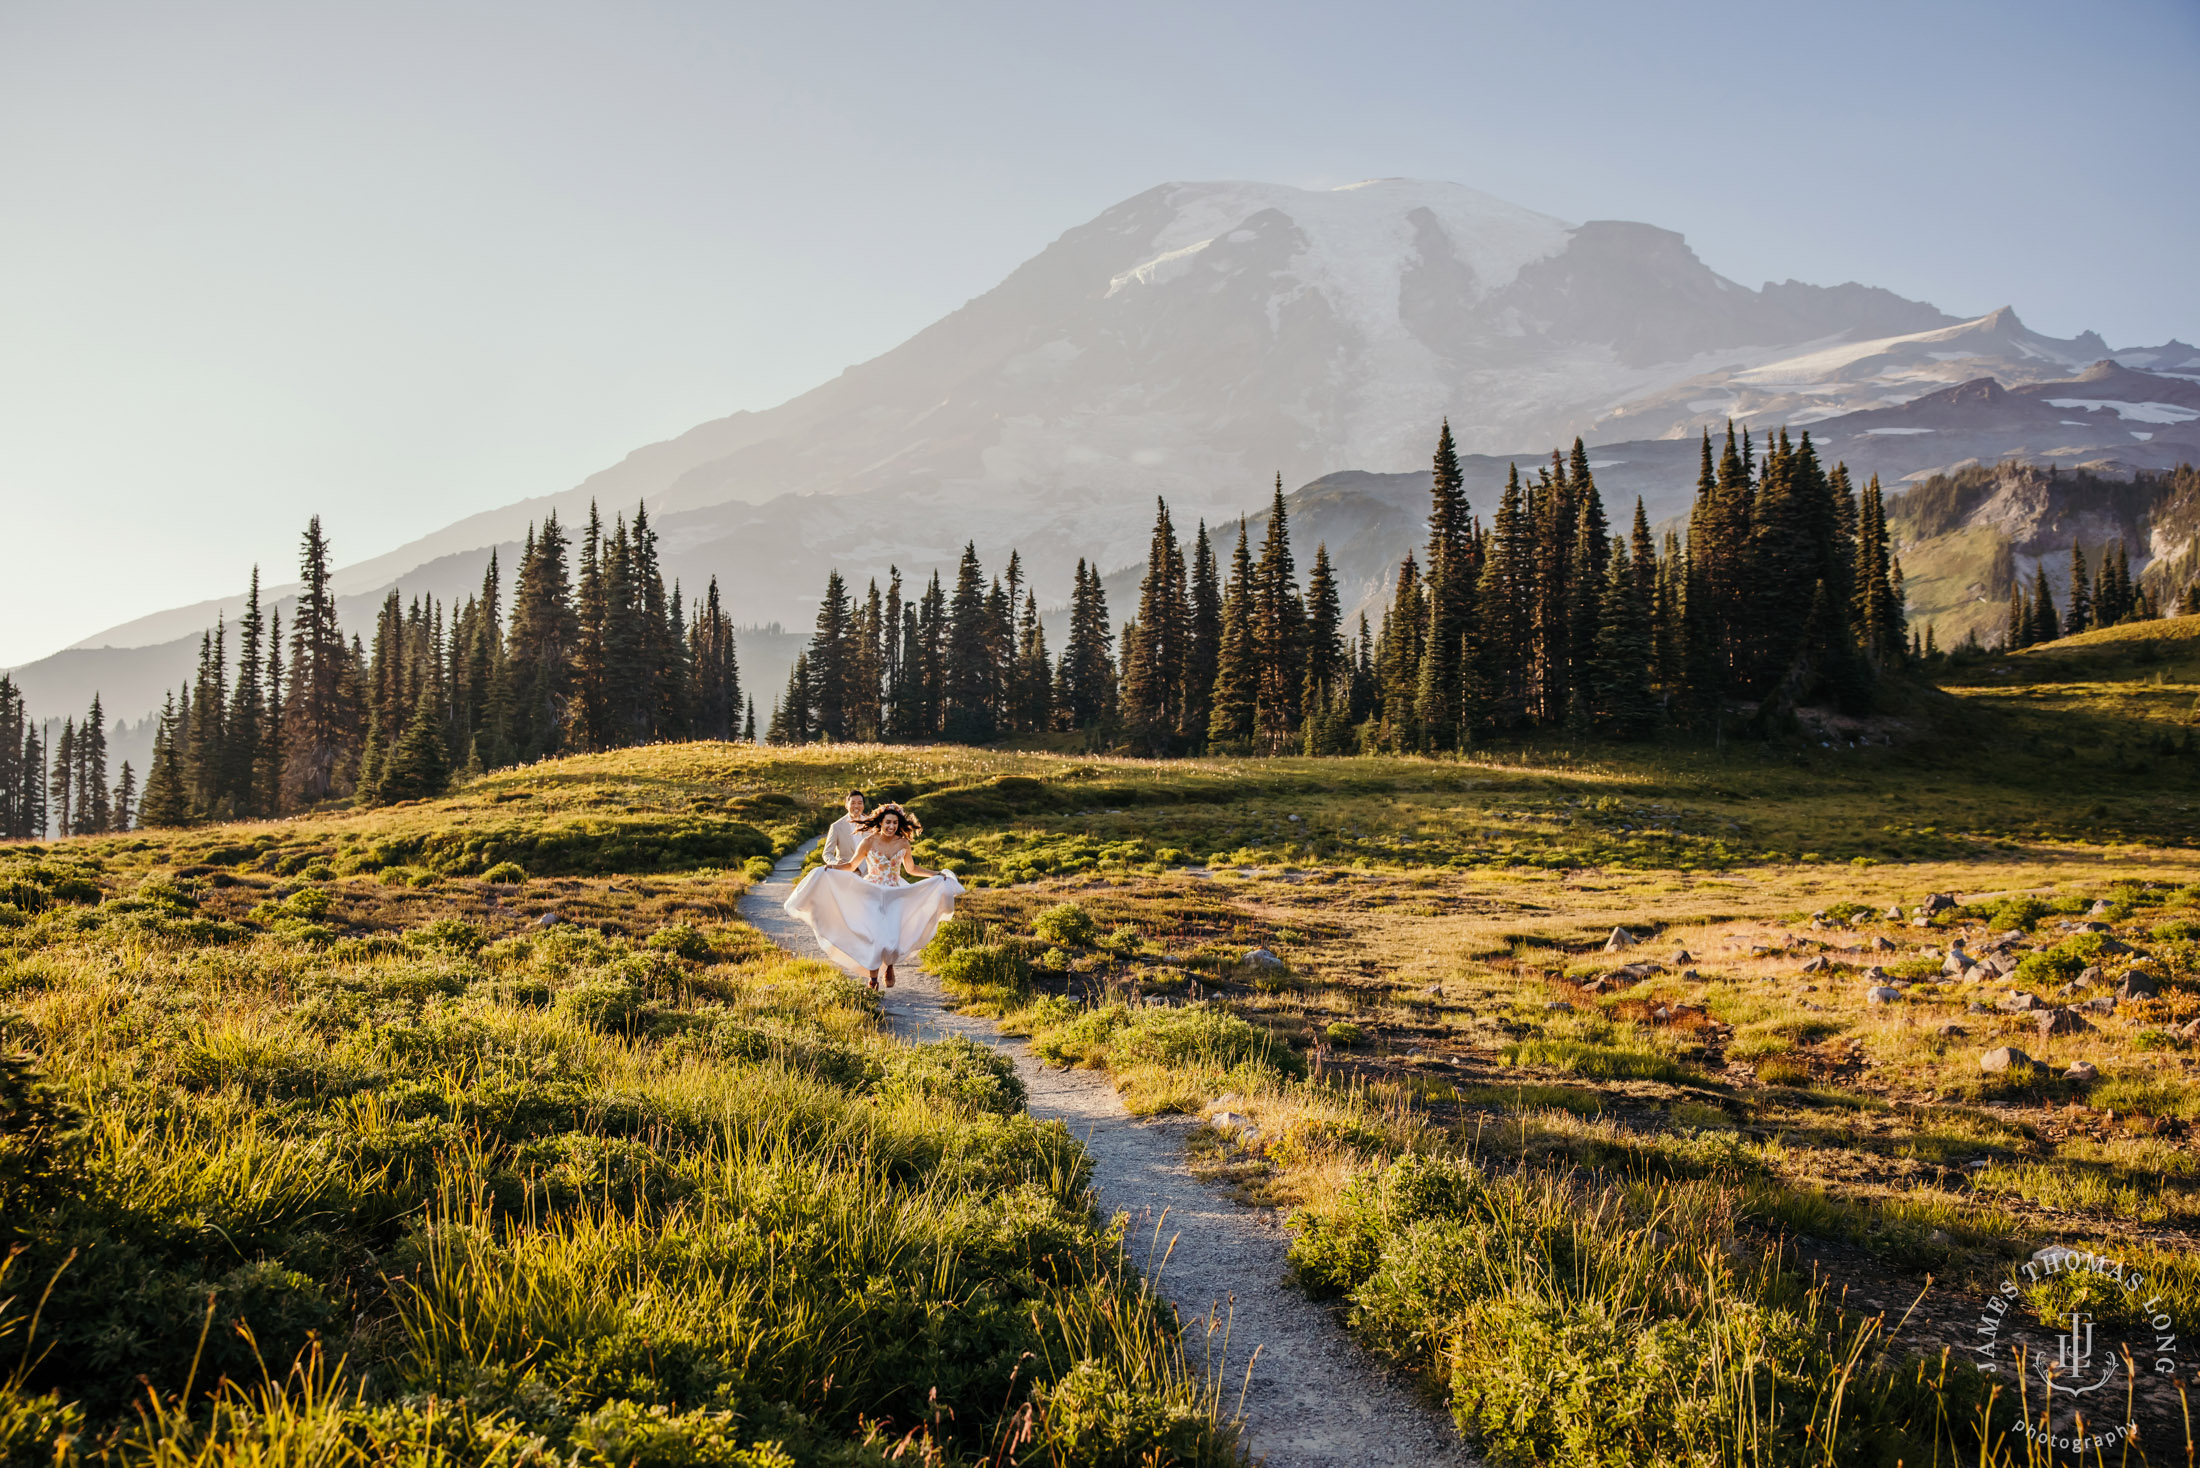 Mount Rainier adventure elopement by Seattle adventure elopement photographer James Thomas Long Photography